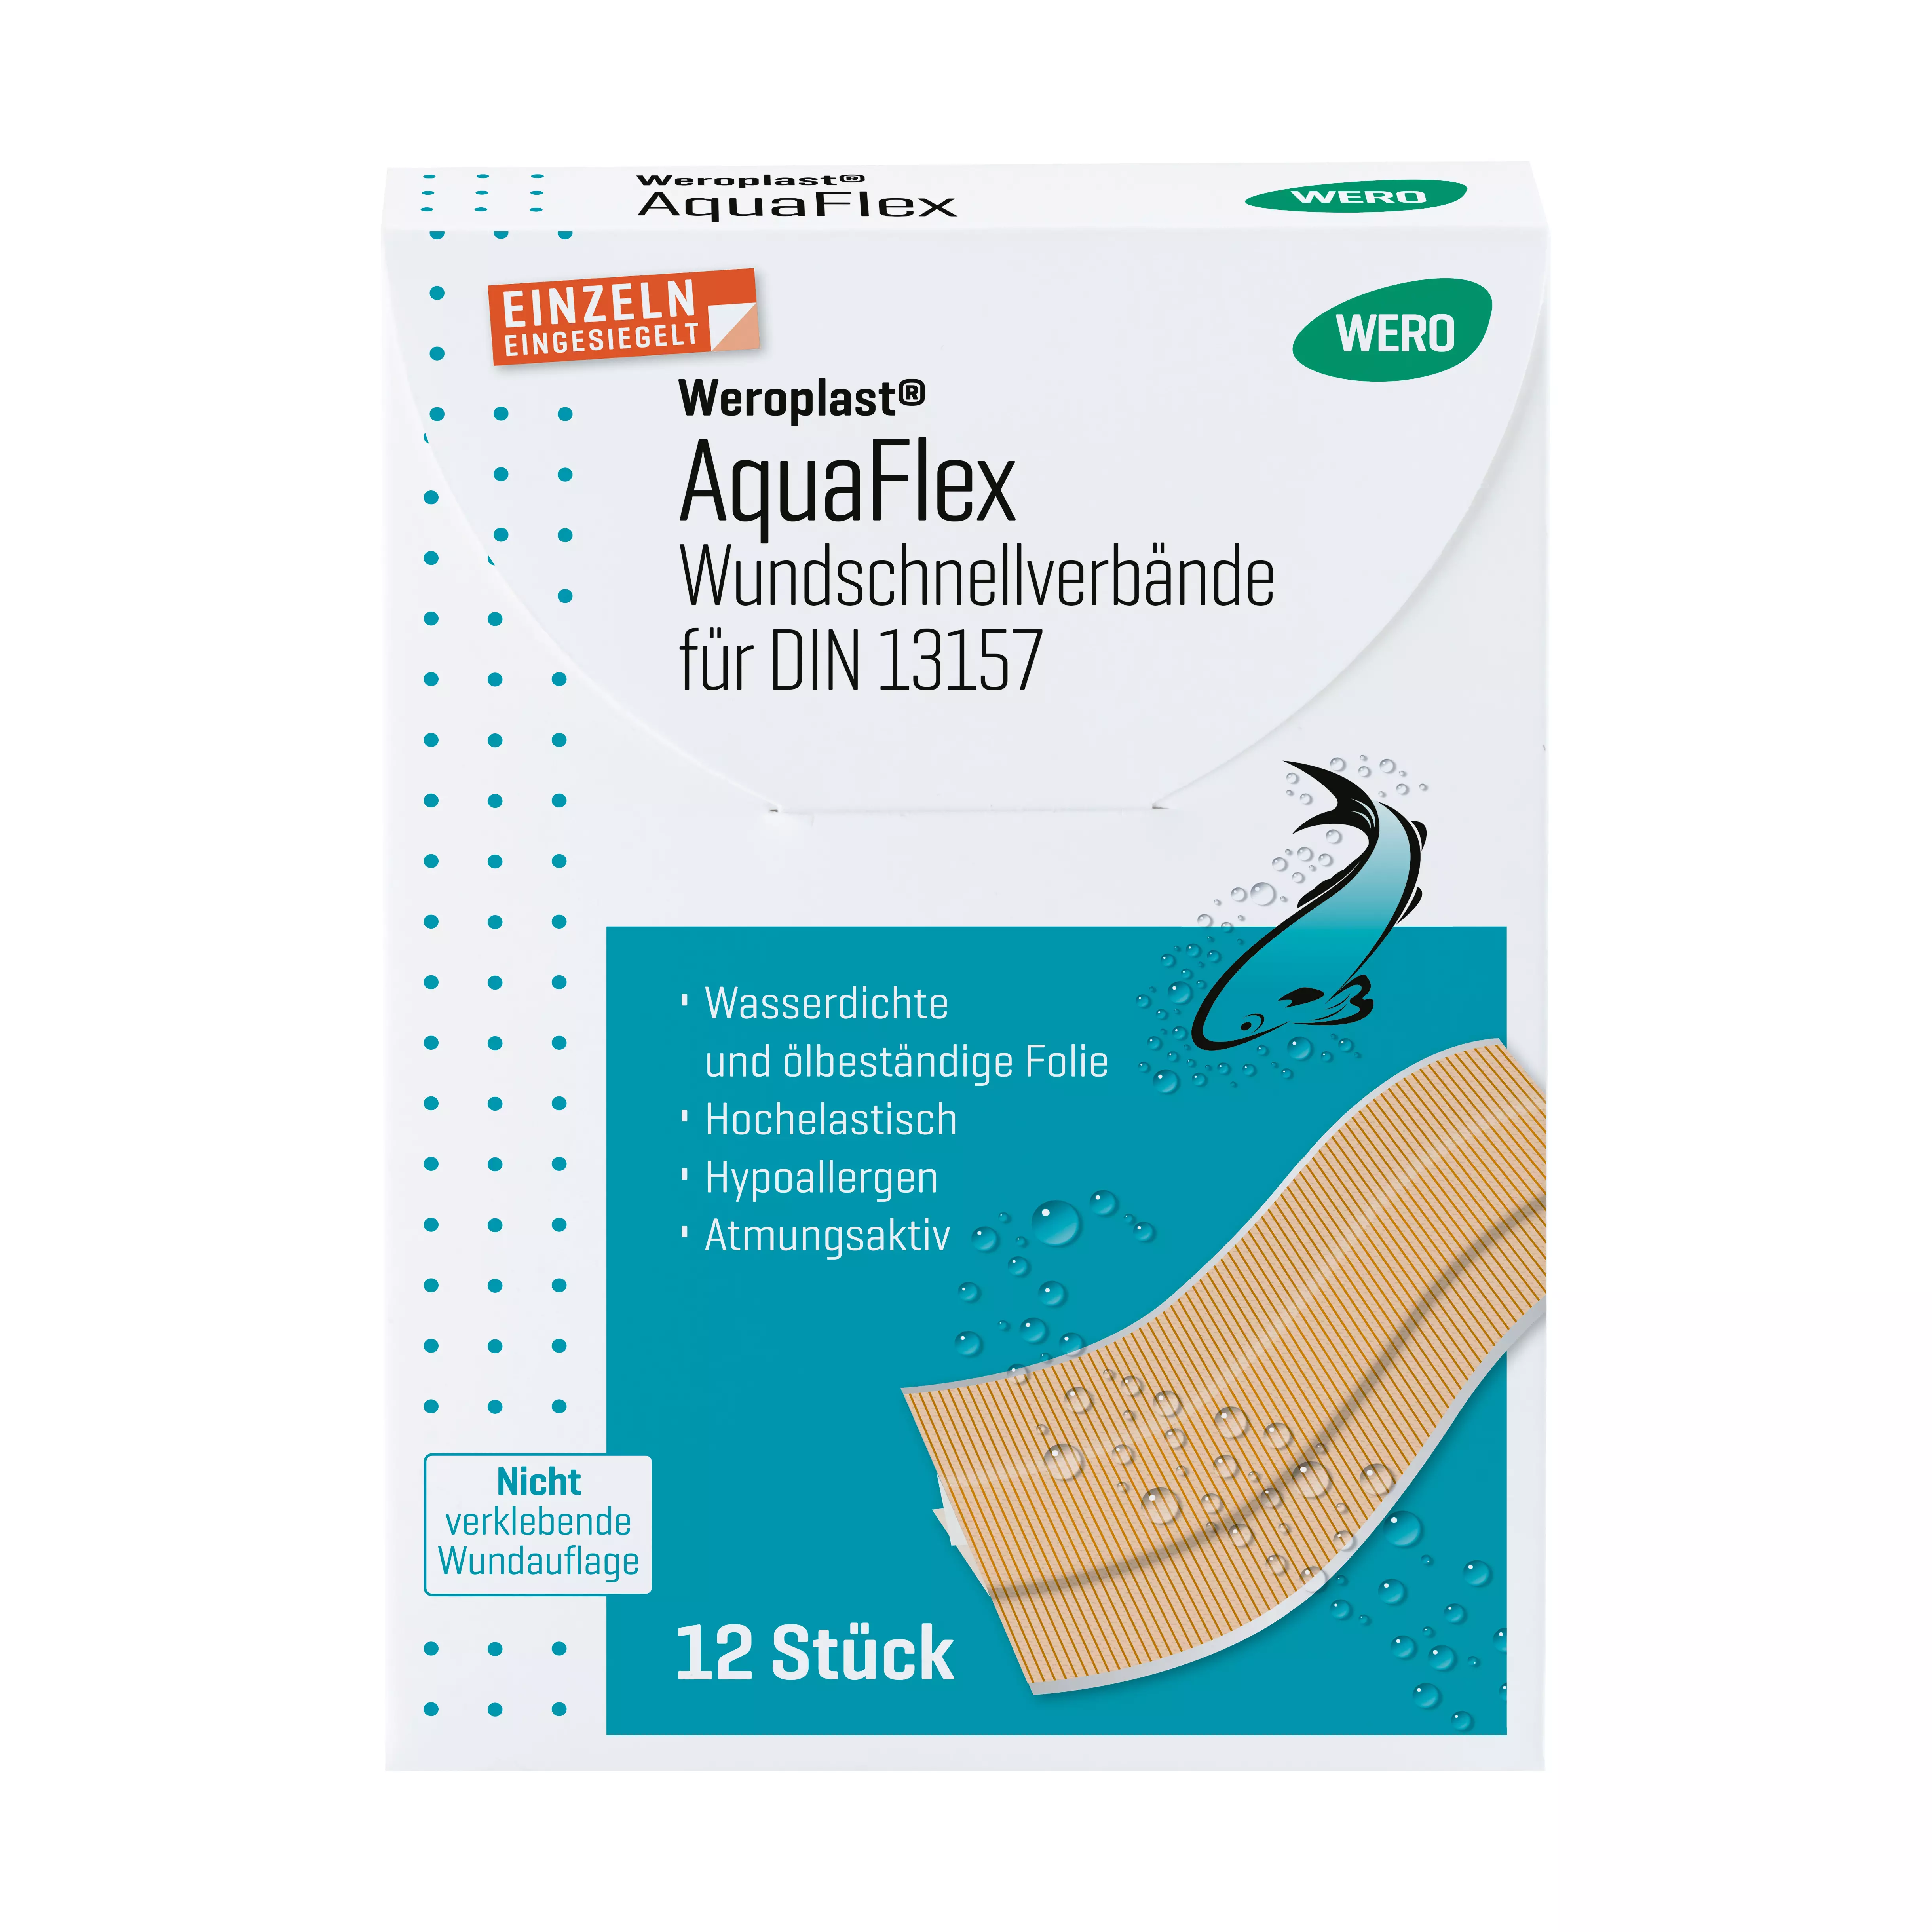 Weroplast® AquaFlex Pflaster - Wundschnellverbände DIN 13157